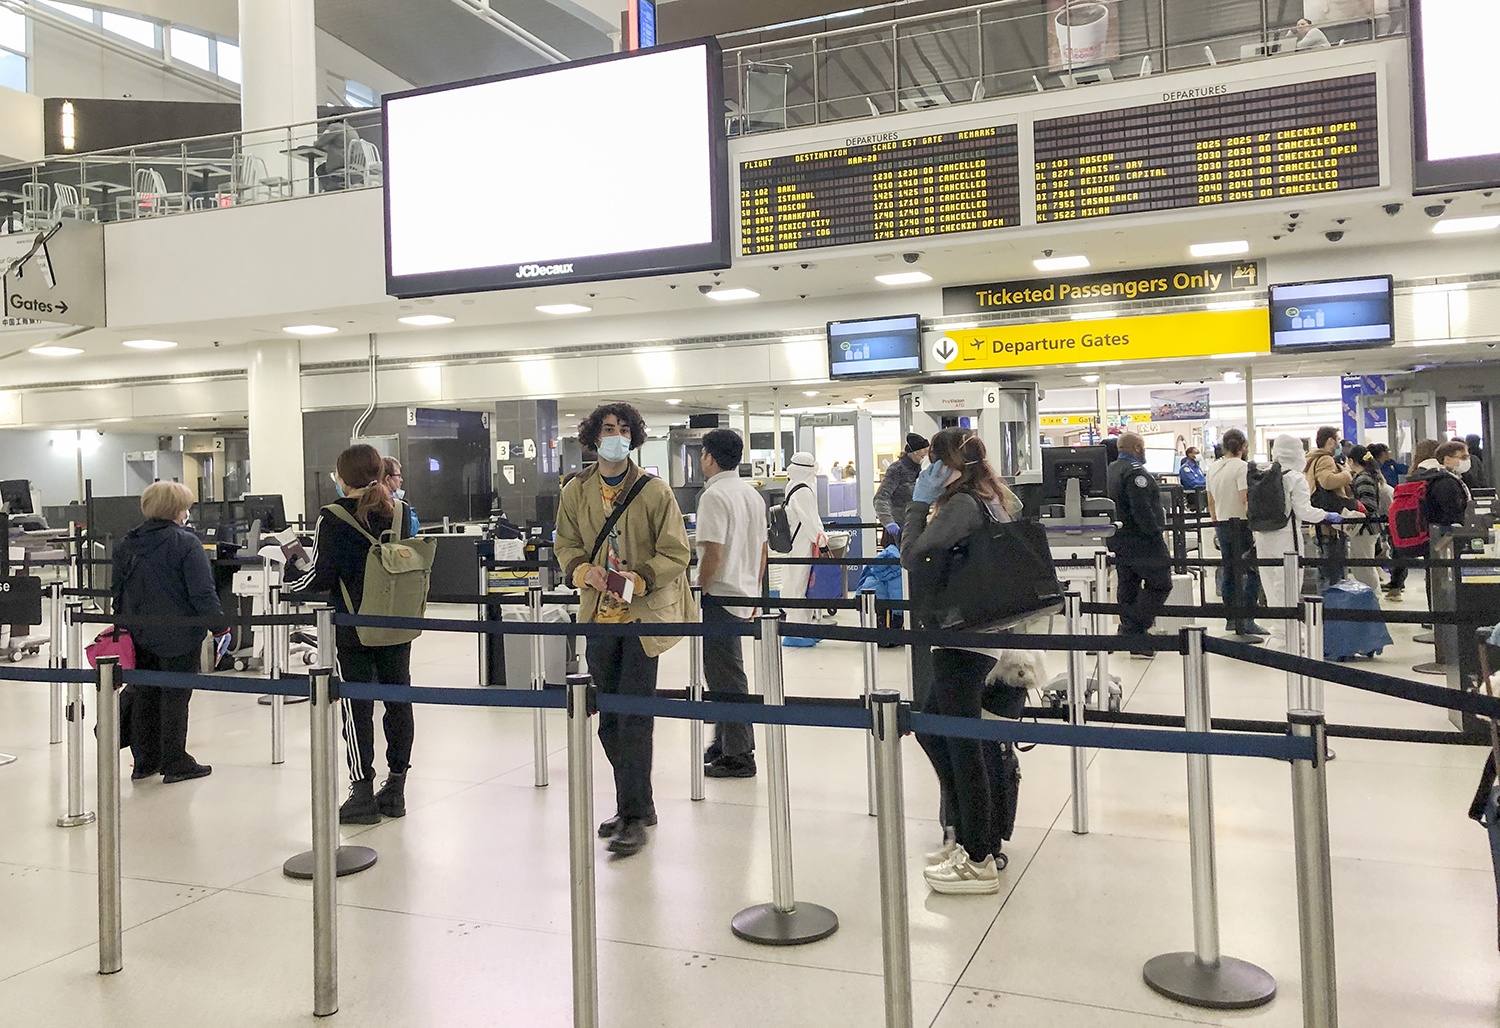 3月28日,在美国纽约肯尼迪机场,乘客排队等待通过安检